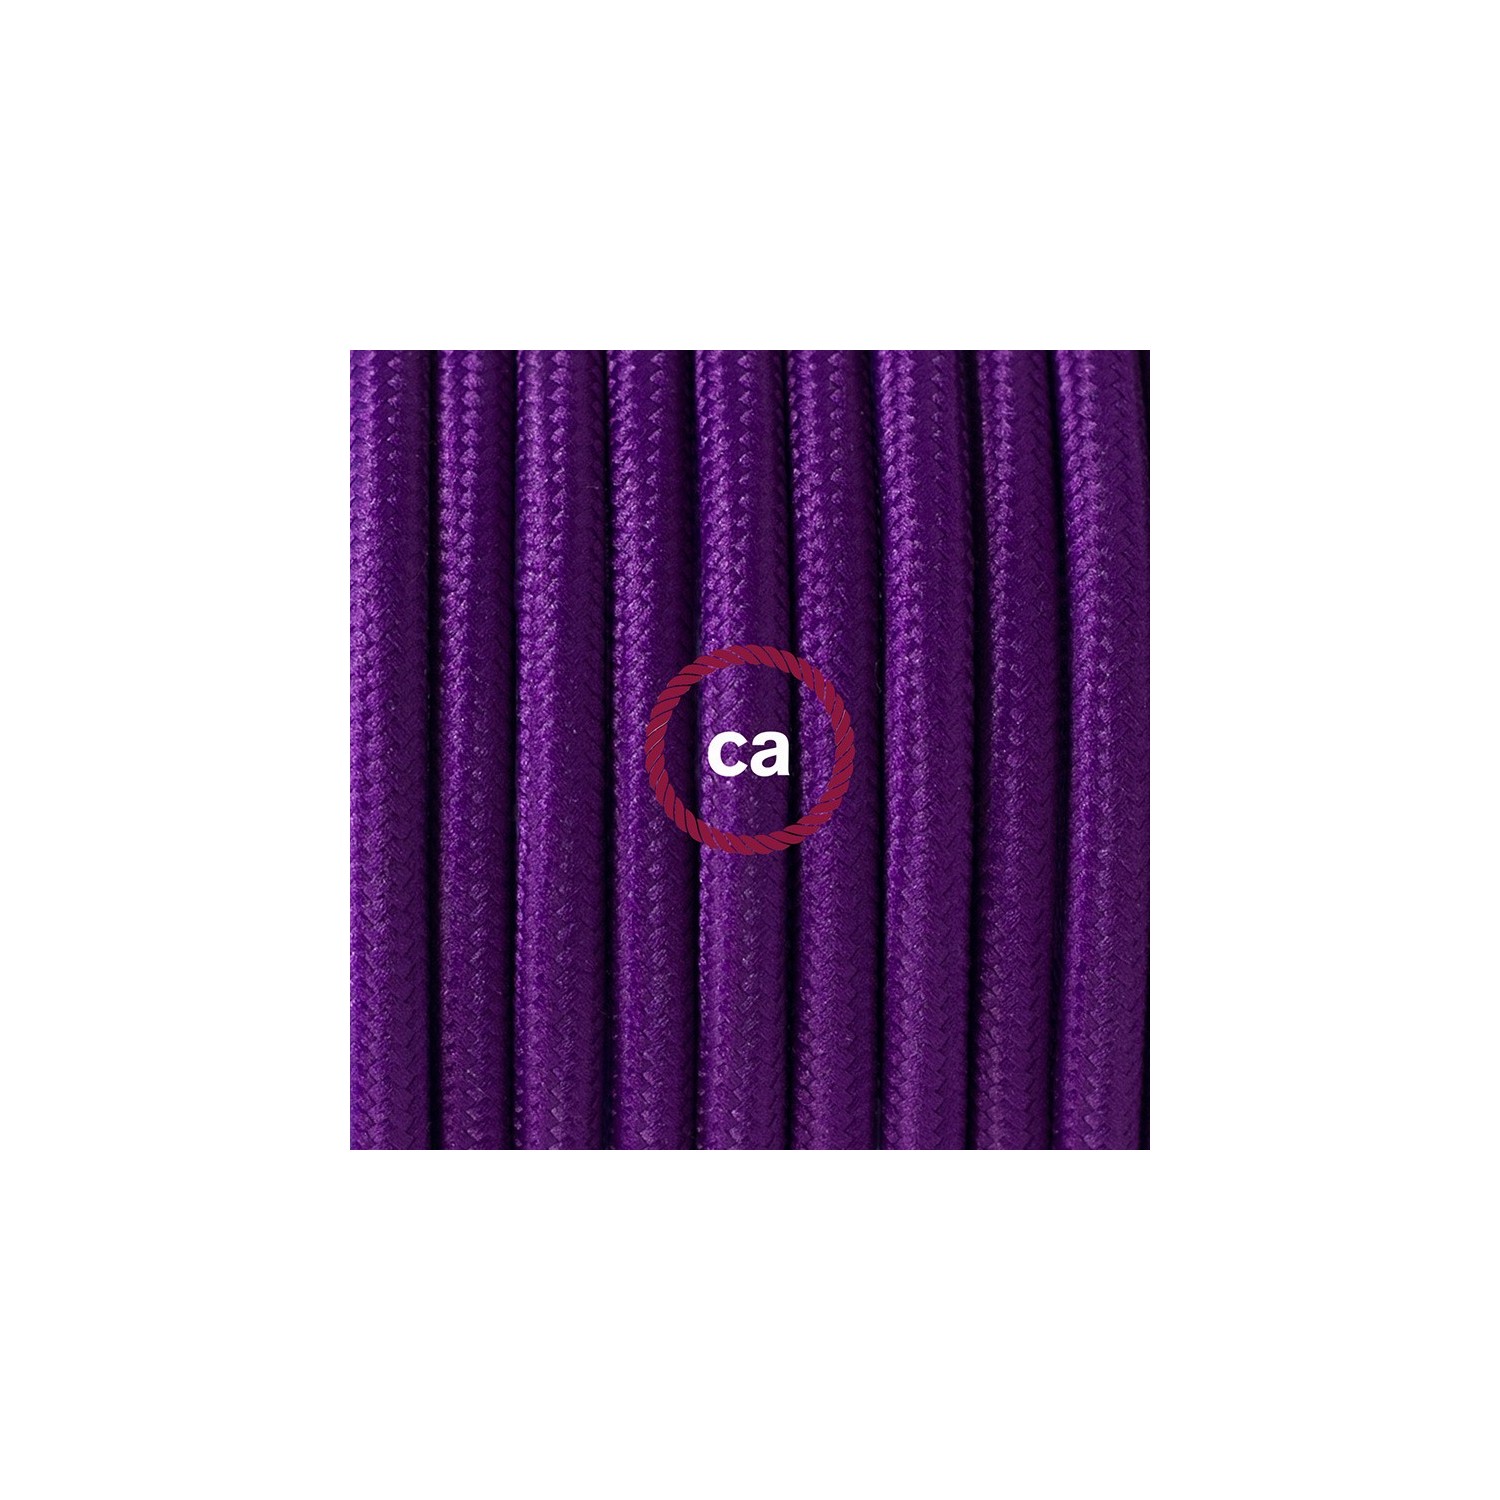 Cableado para lámpara de piso, cable RM14 Rayón Púrpura 3 m. Elige tu el color de la clavija y del interruptor!